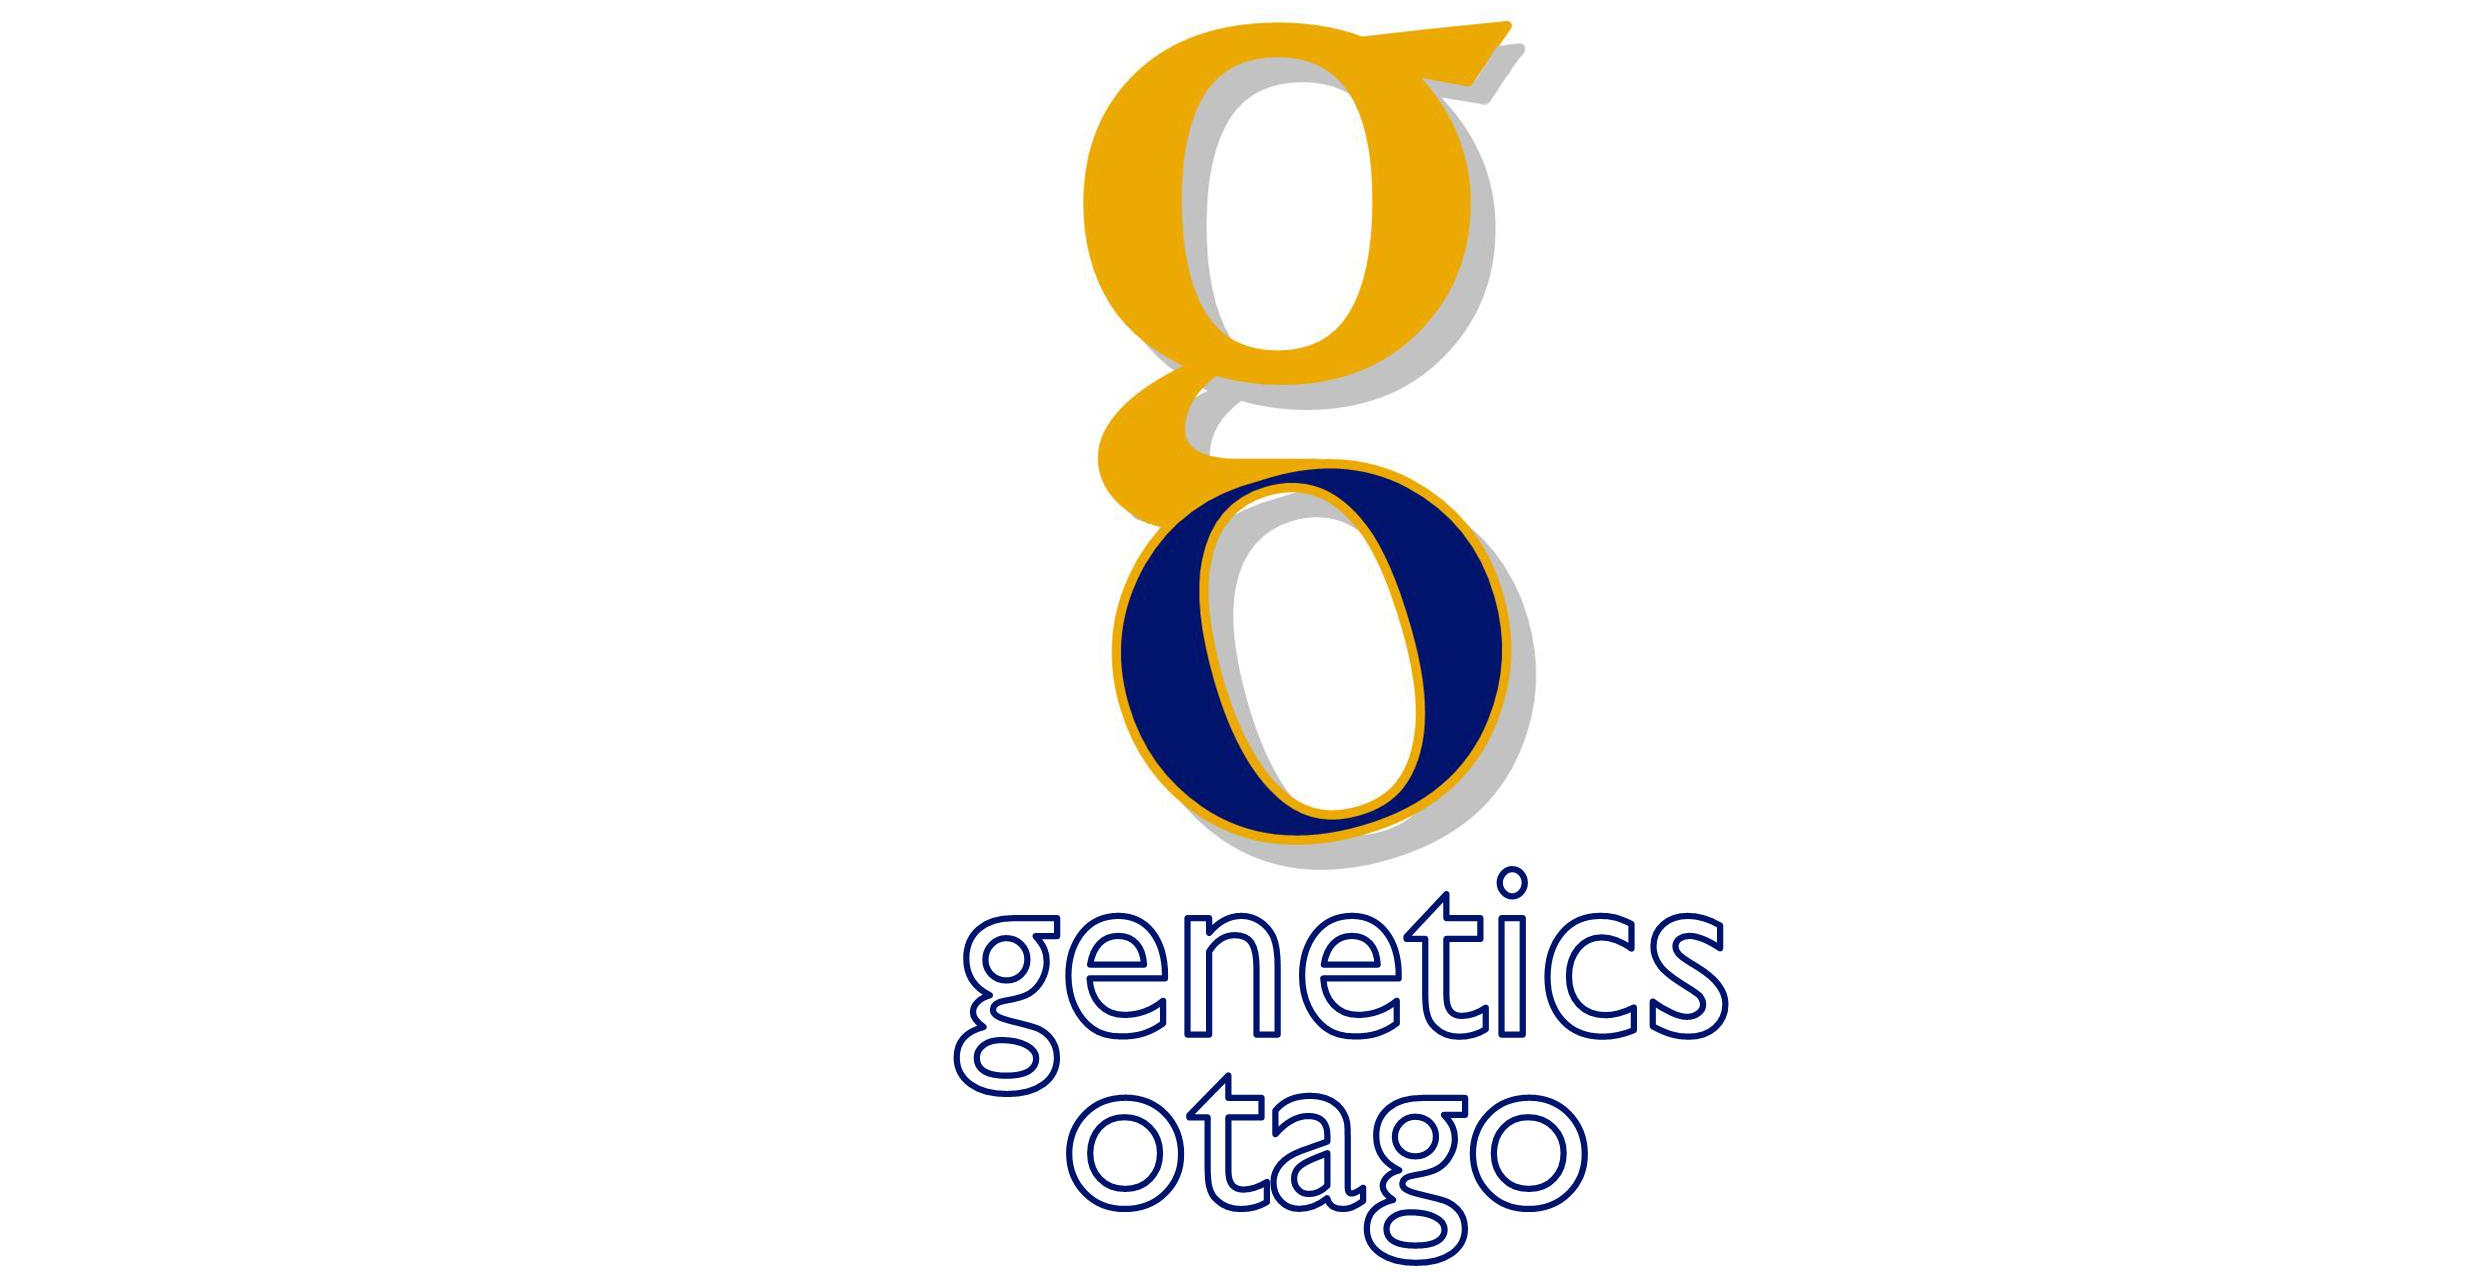 Genetics Otago